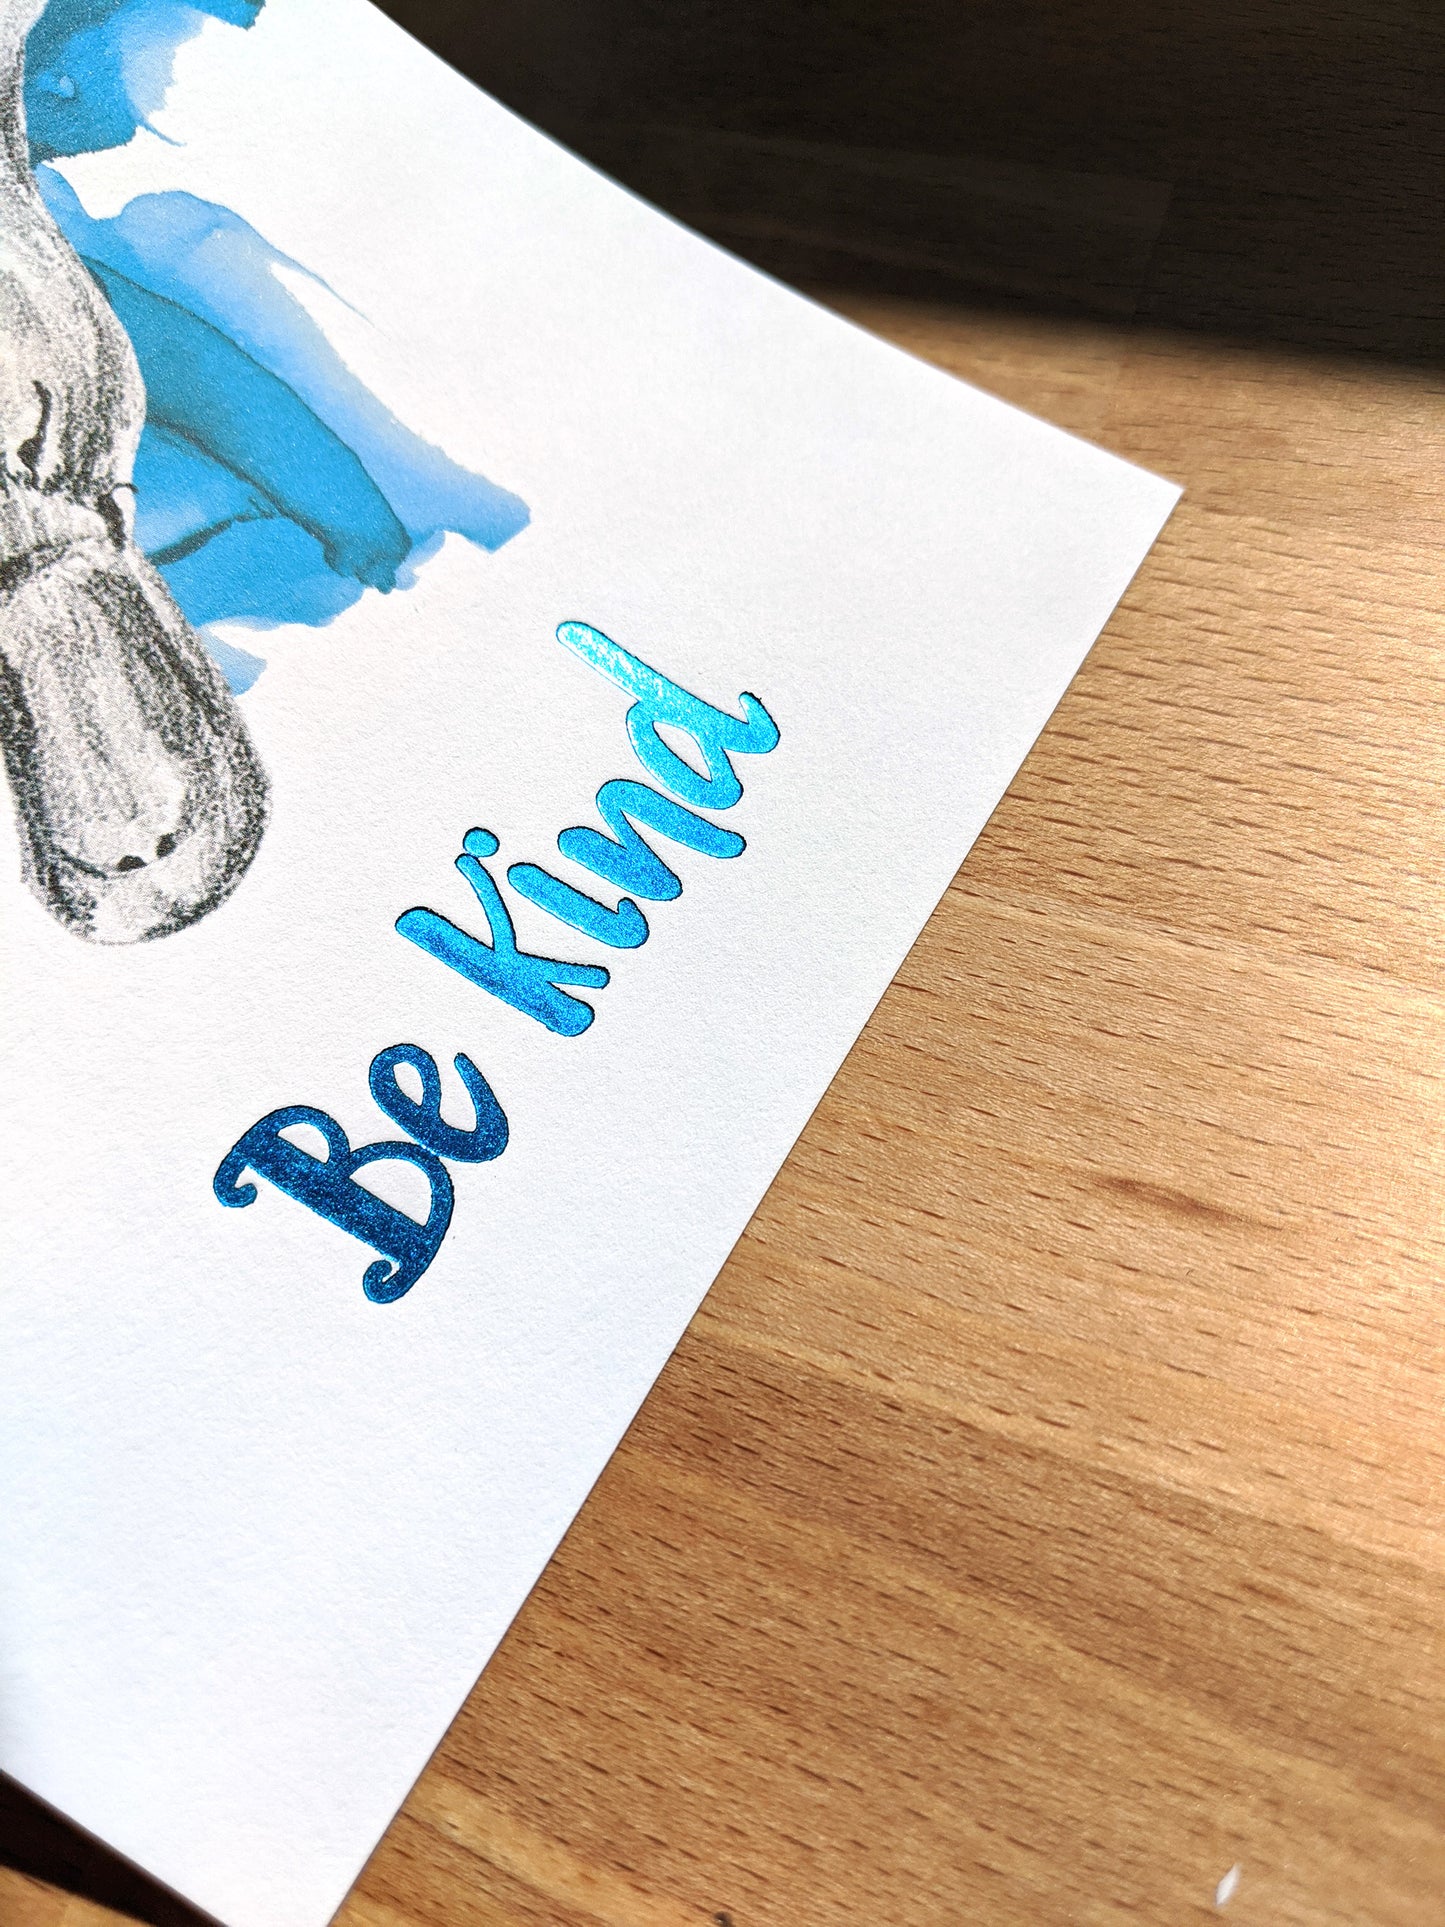 animal art print | be kind platypus